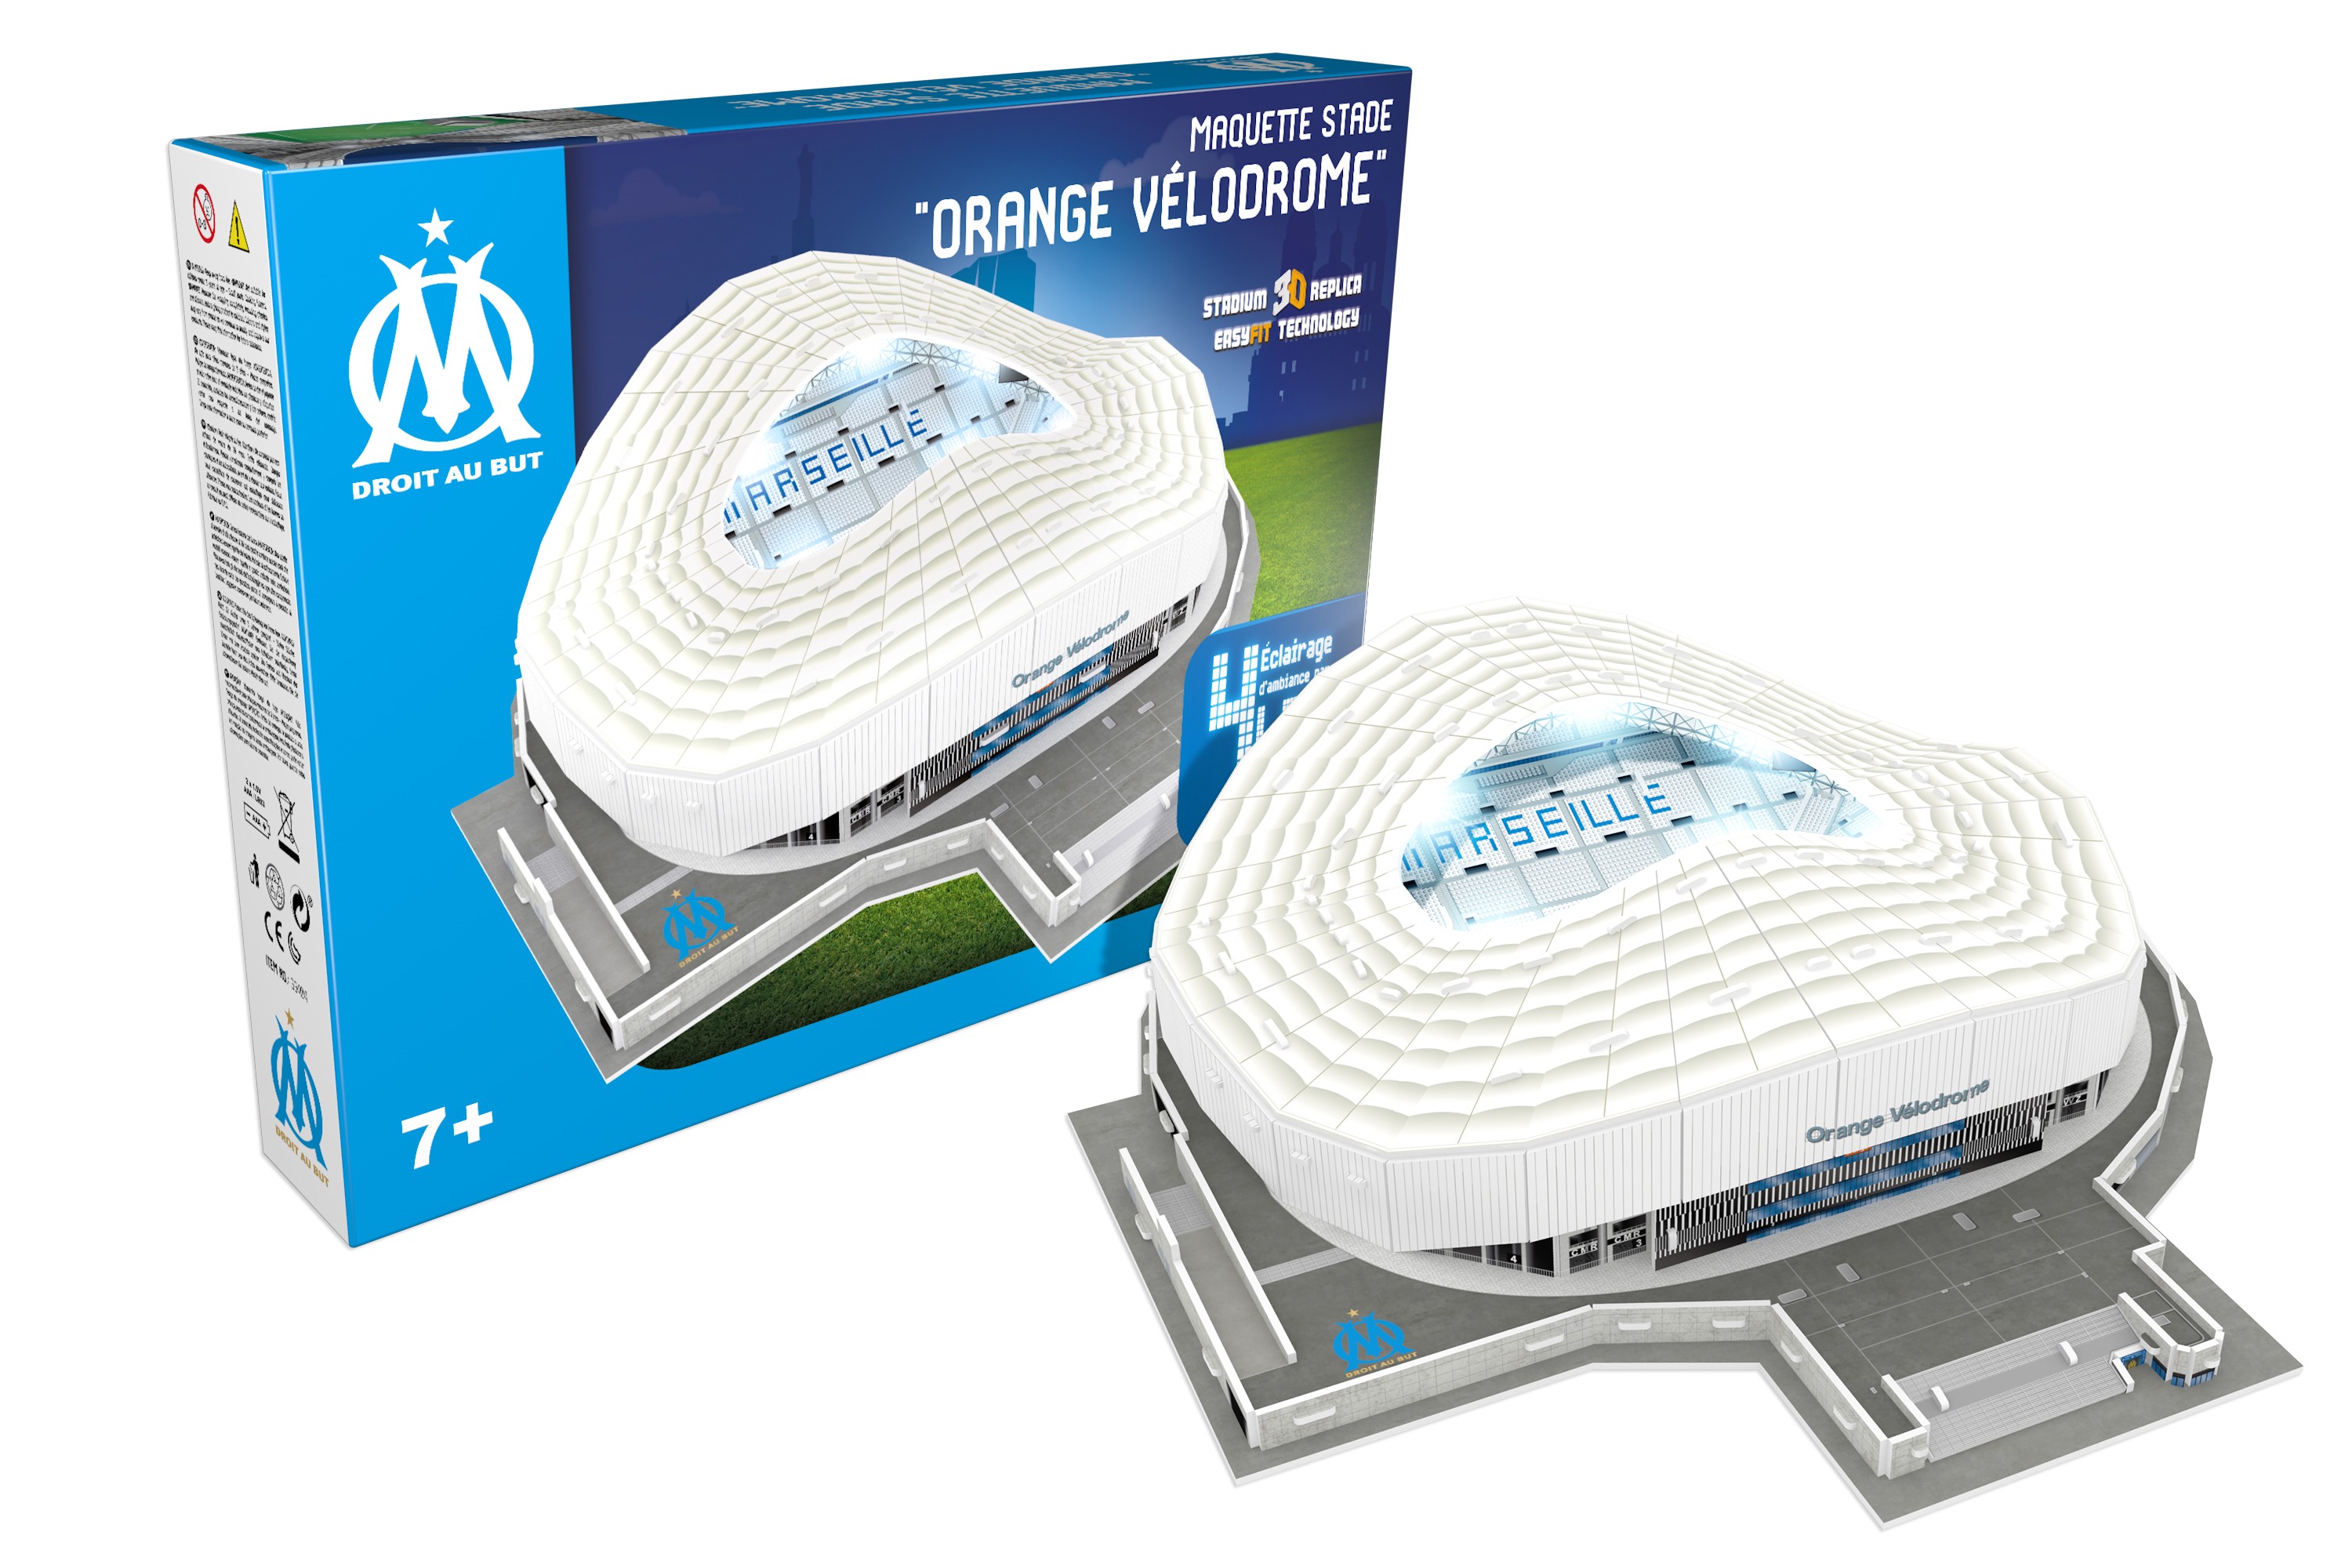 Stade Olympique de Marseille Puzzle 3D avec lumière LED: Un passe